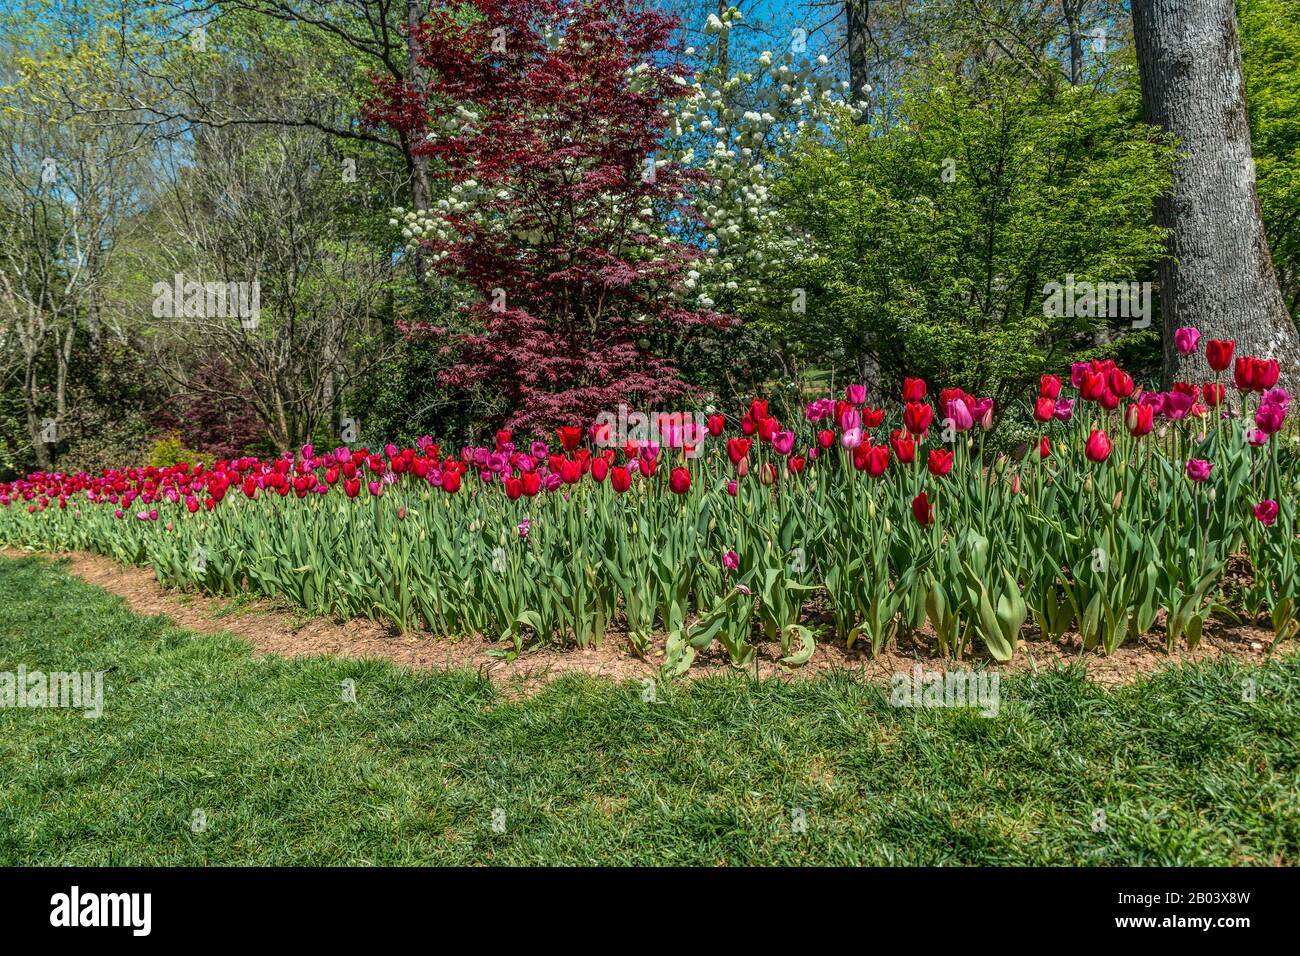 Vivaci tulipani rossi in un letto di fiori che circondano alberi in fiore sullo sfondo, in una luminosa giornata di sole in primavera Foto Stock